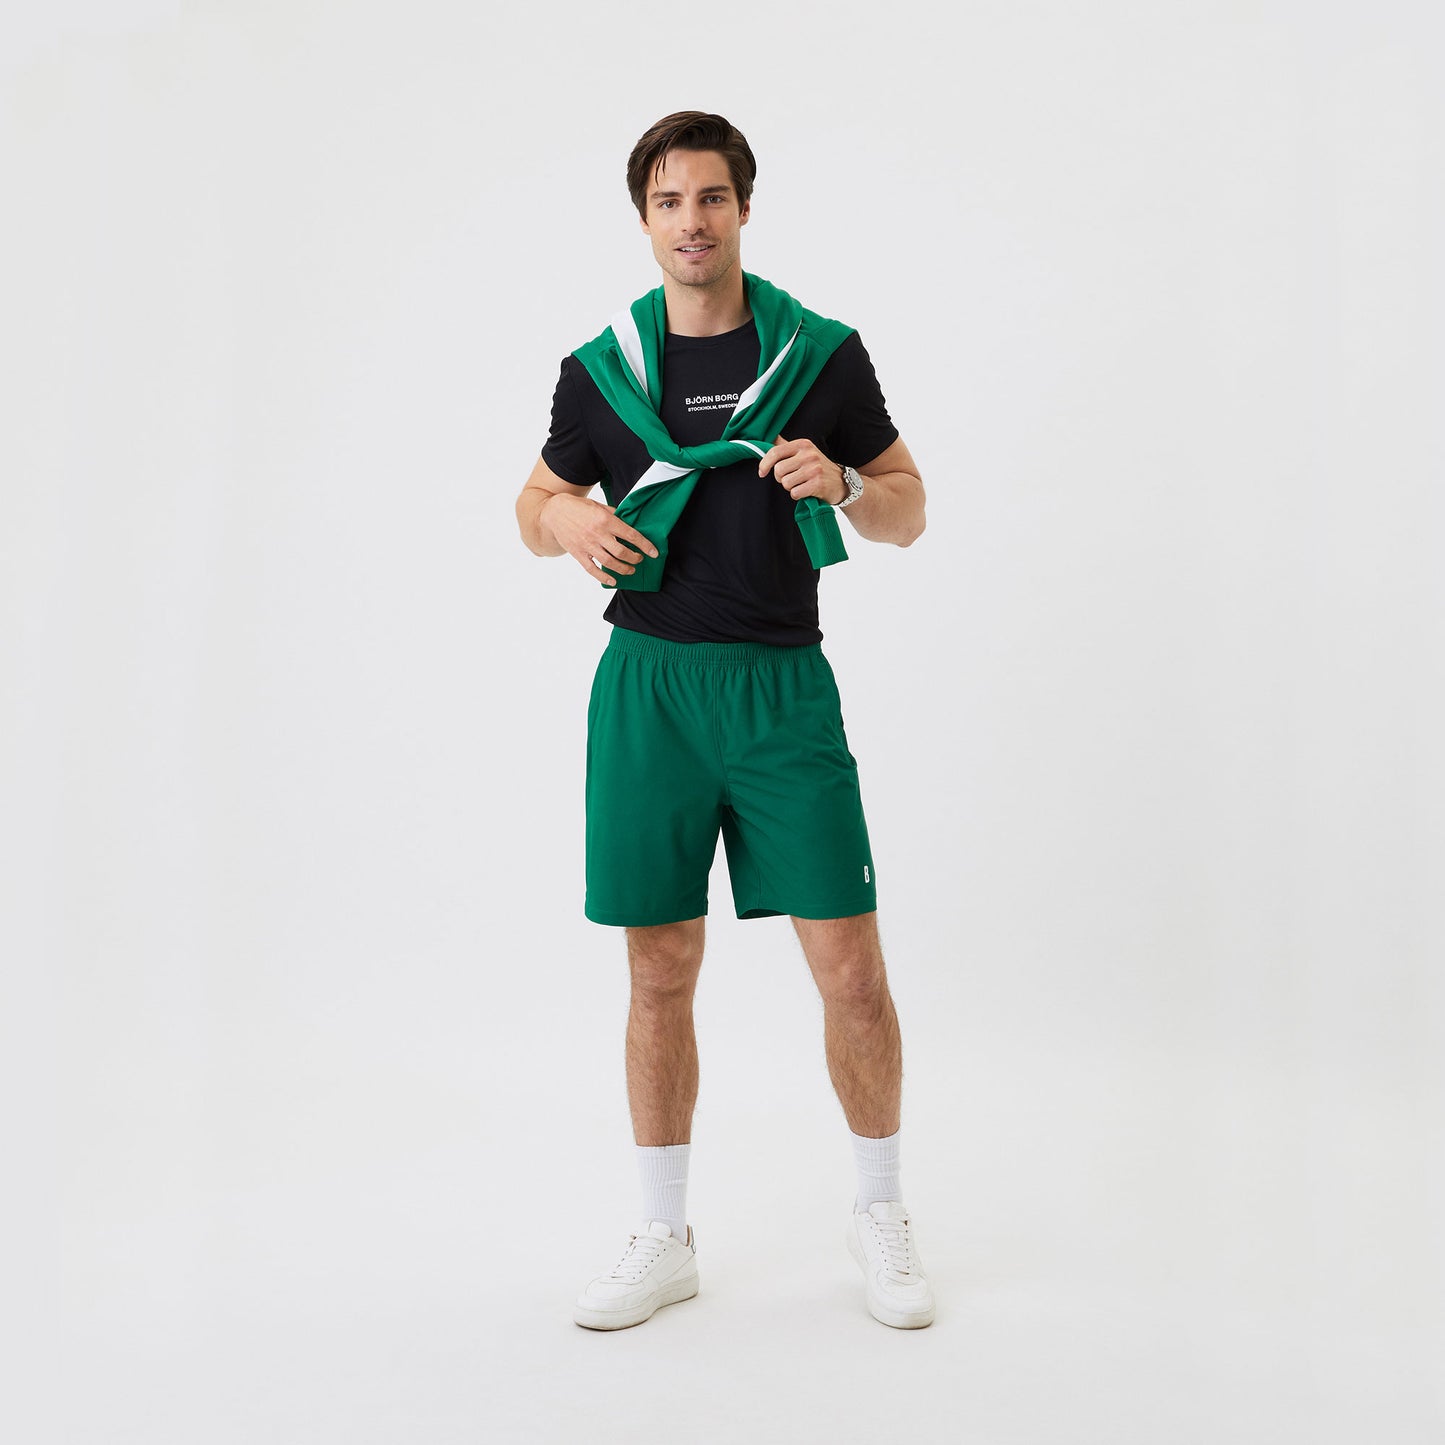 Björn Borg Ace Men's 9-Inch Tennis Shorts Green (4)